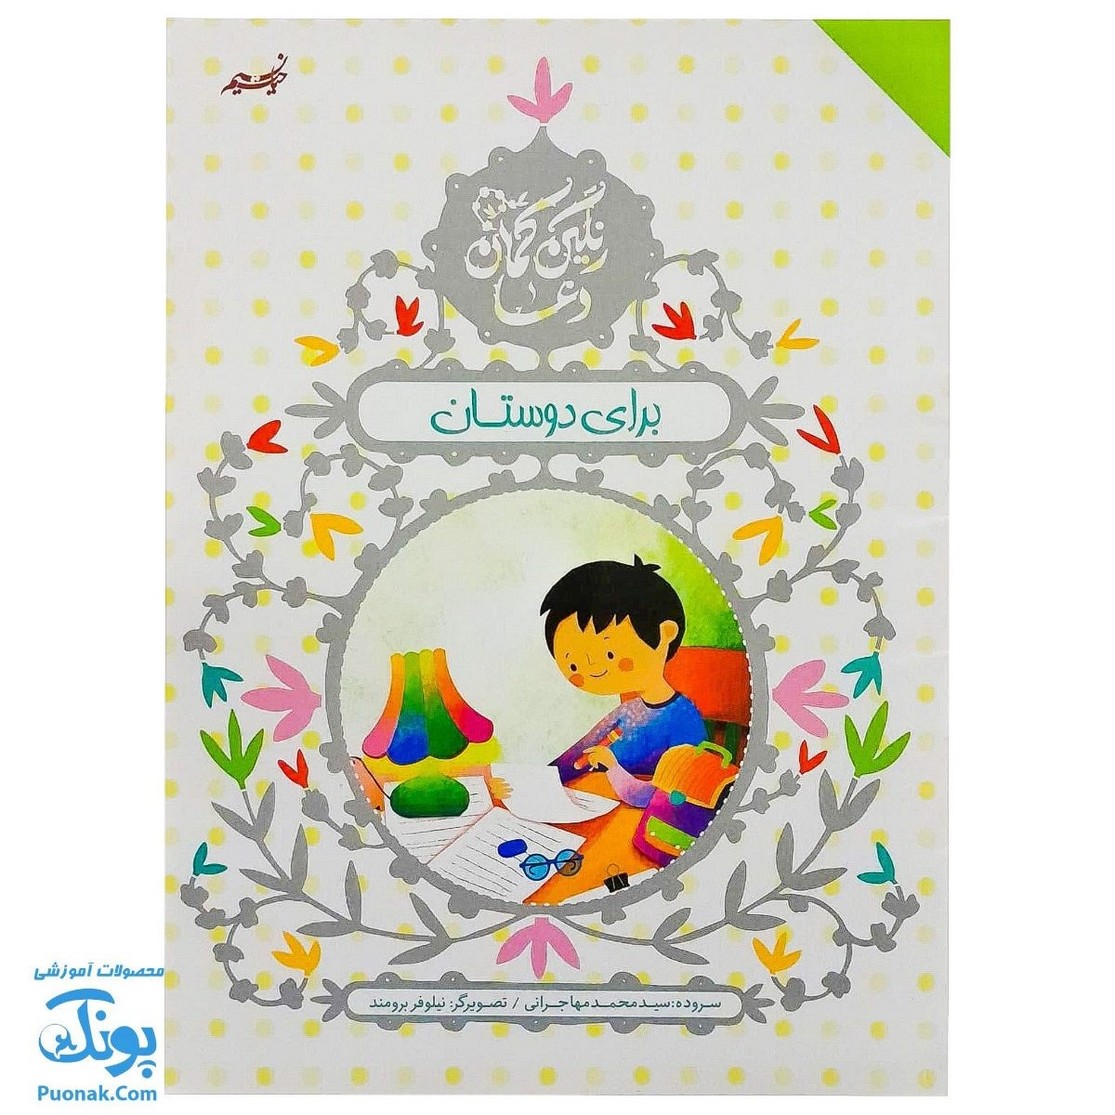 کتاب رنگین کمان دعا برای برای دوستان (آموزش دعا و شکرگزاری با زبان شعر برای کودکان) - پونک